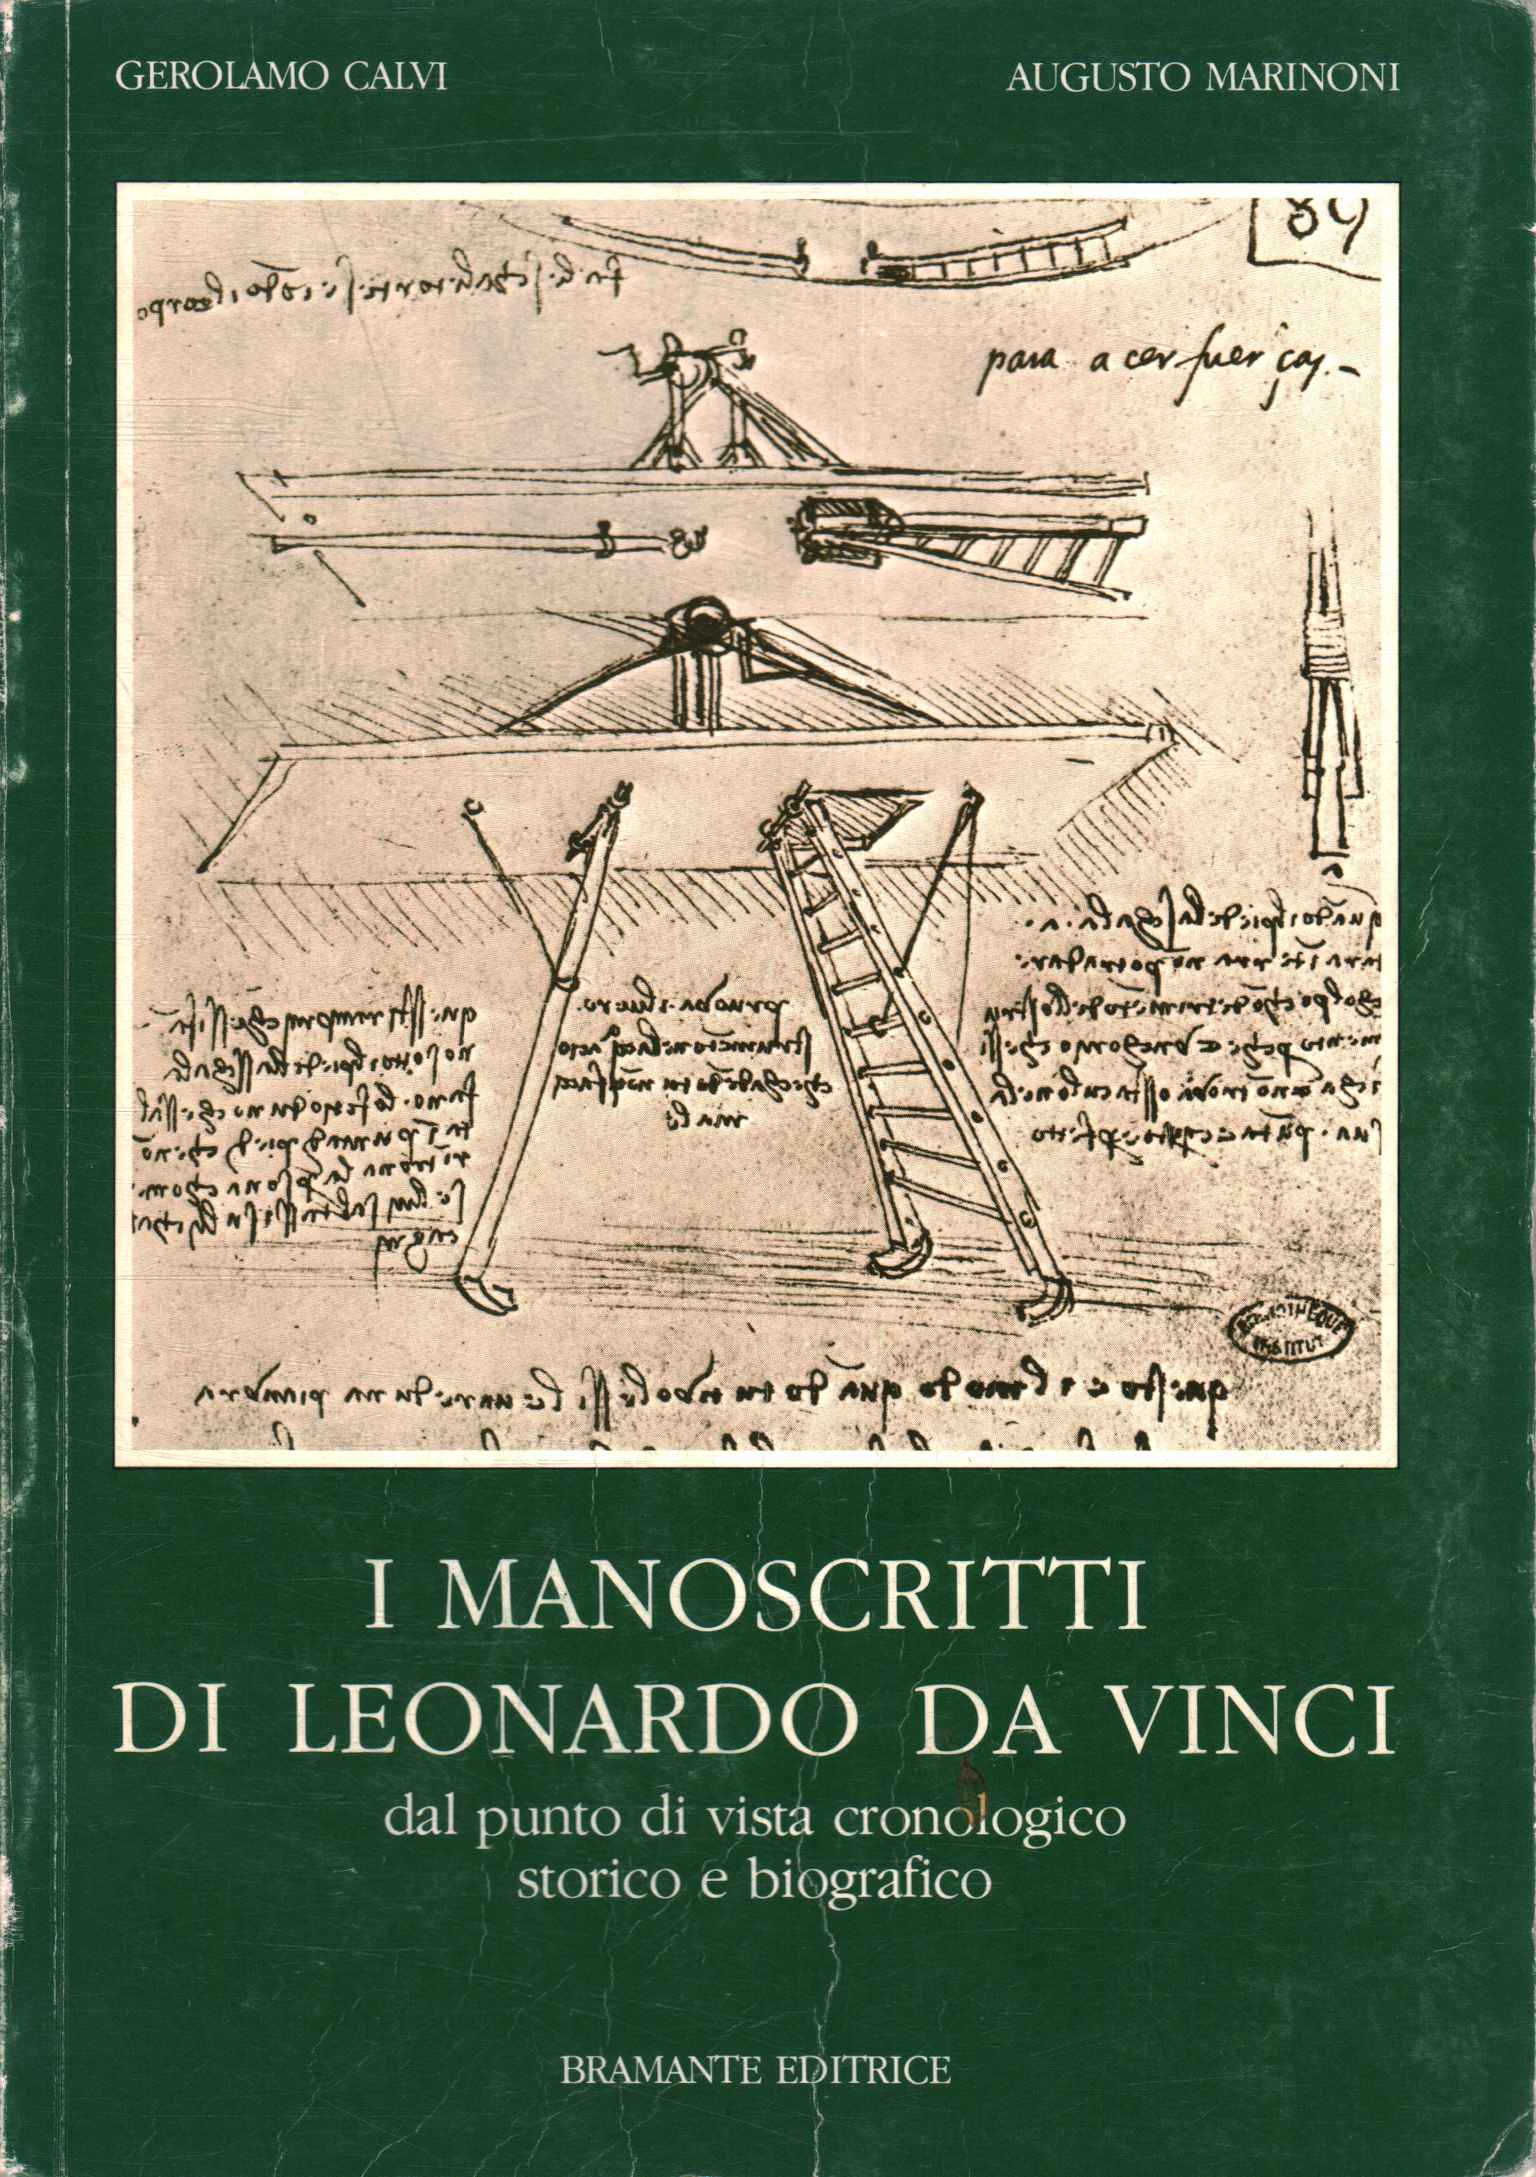 Les manuscrits de Léonard de Vinci